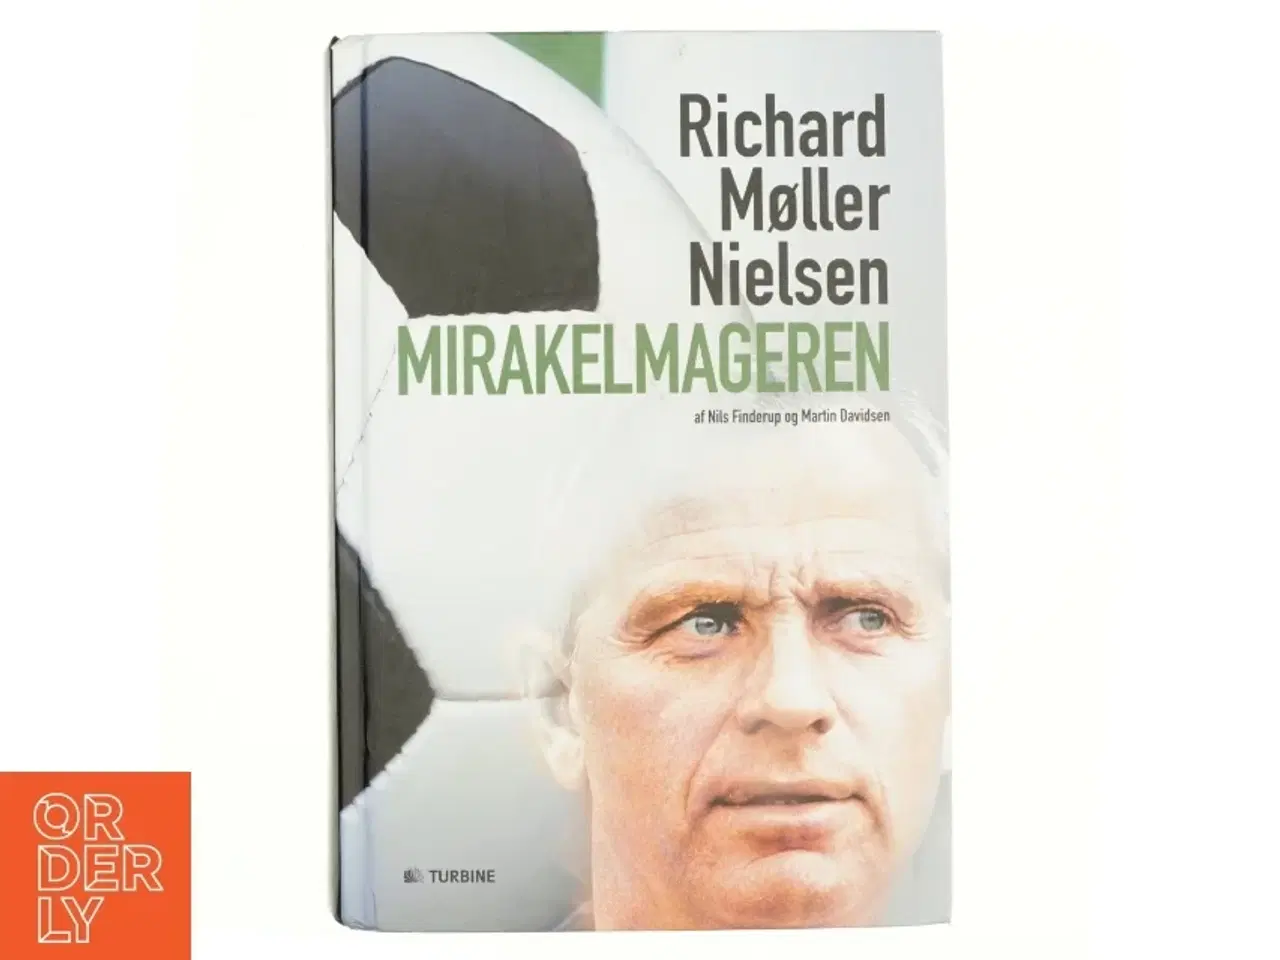 Billede 1 - Mirakelmageren - Richard Møller Nielsen af Nils Finderup og Martin Davidsen (bog)